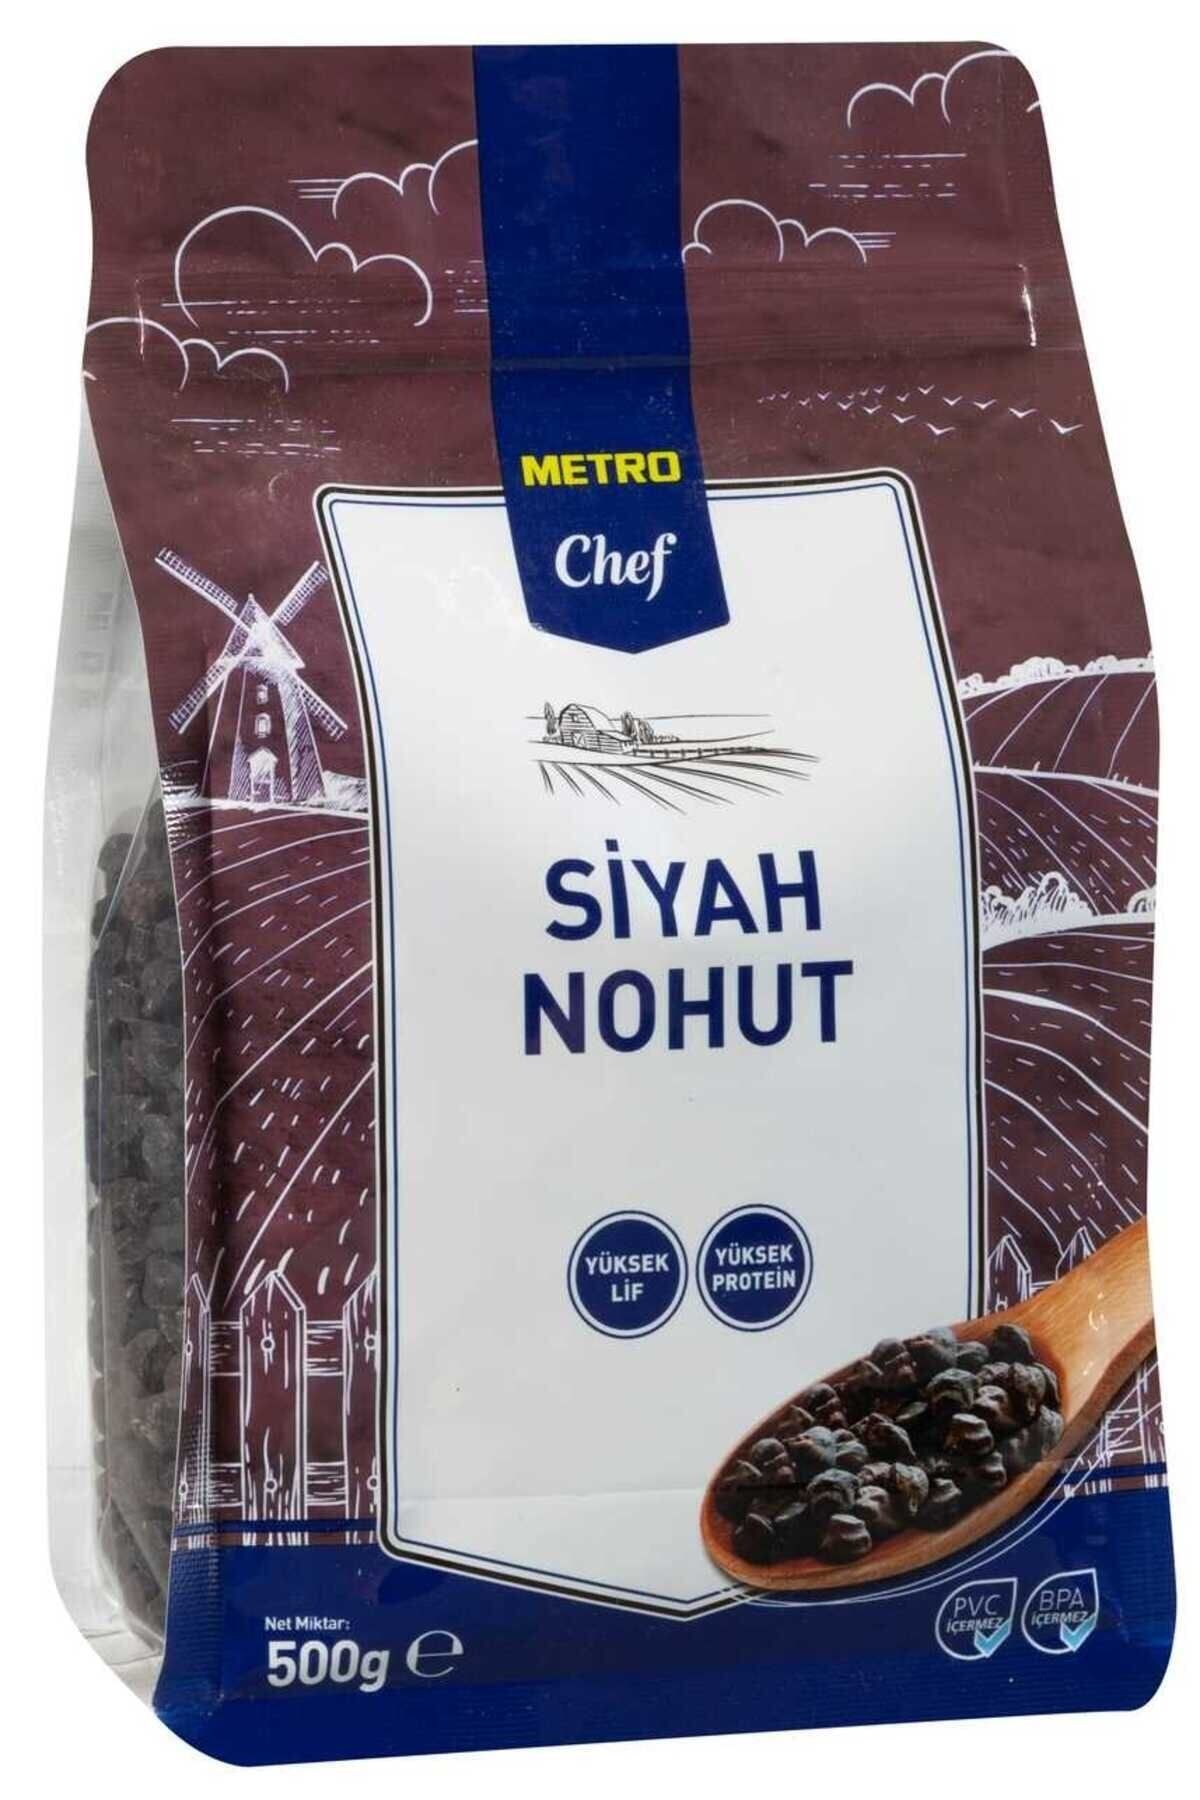 Metro Chef Siyah Nohut 500G 2 PAKET Tohum Bakliyat Baklagil